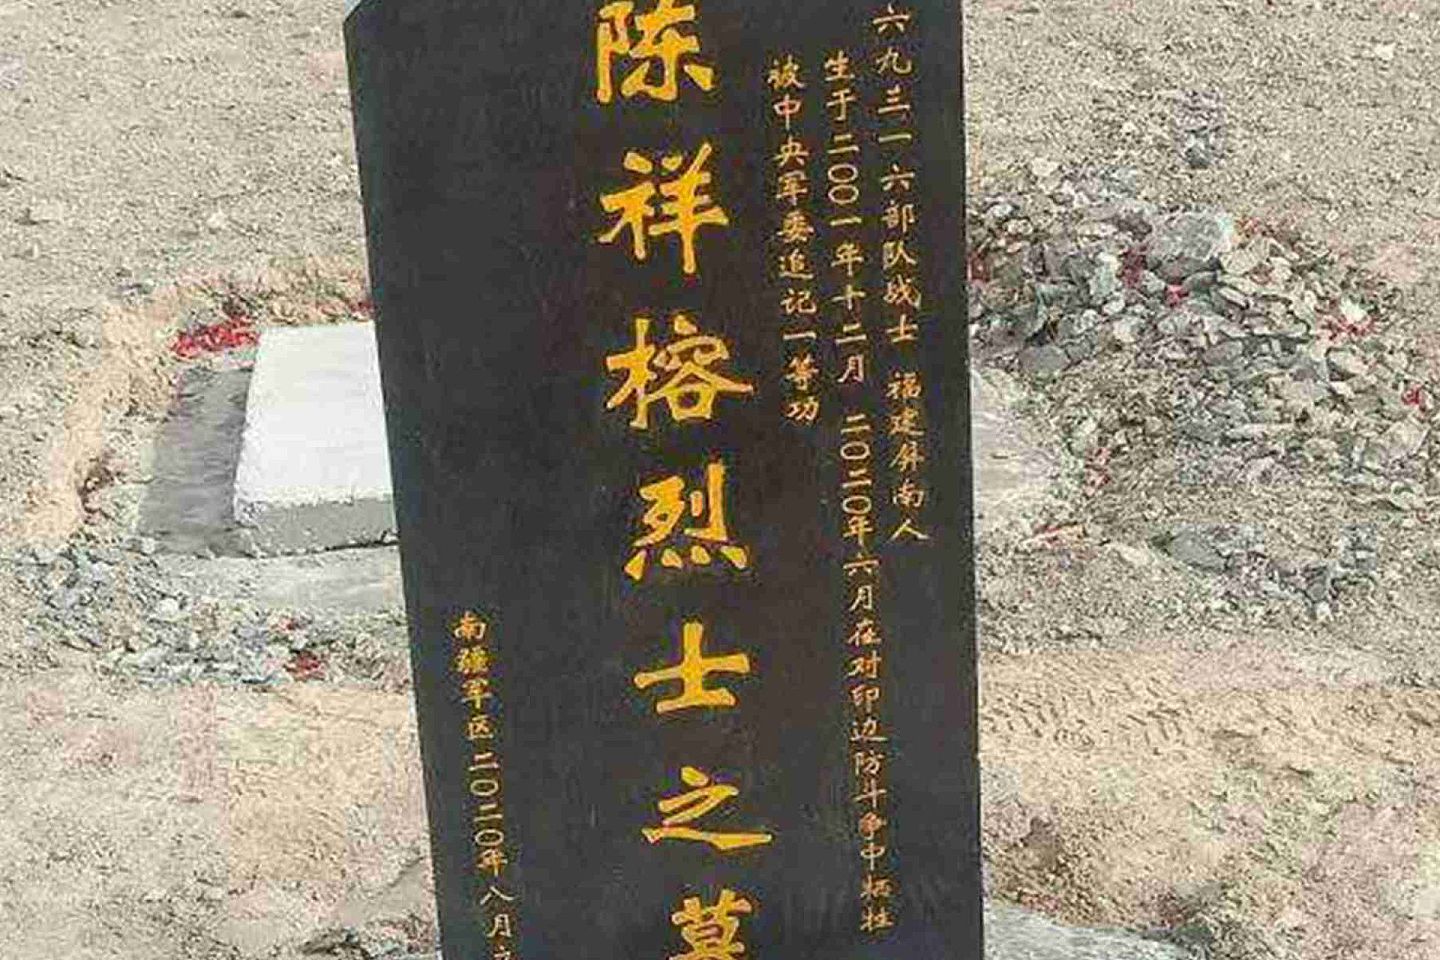 陈祥榕墓碑照片在中国网络流传。（微博@鼎盛沙龙 ）